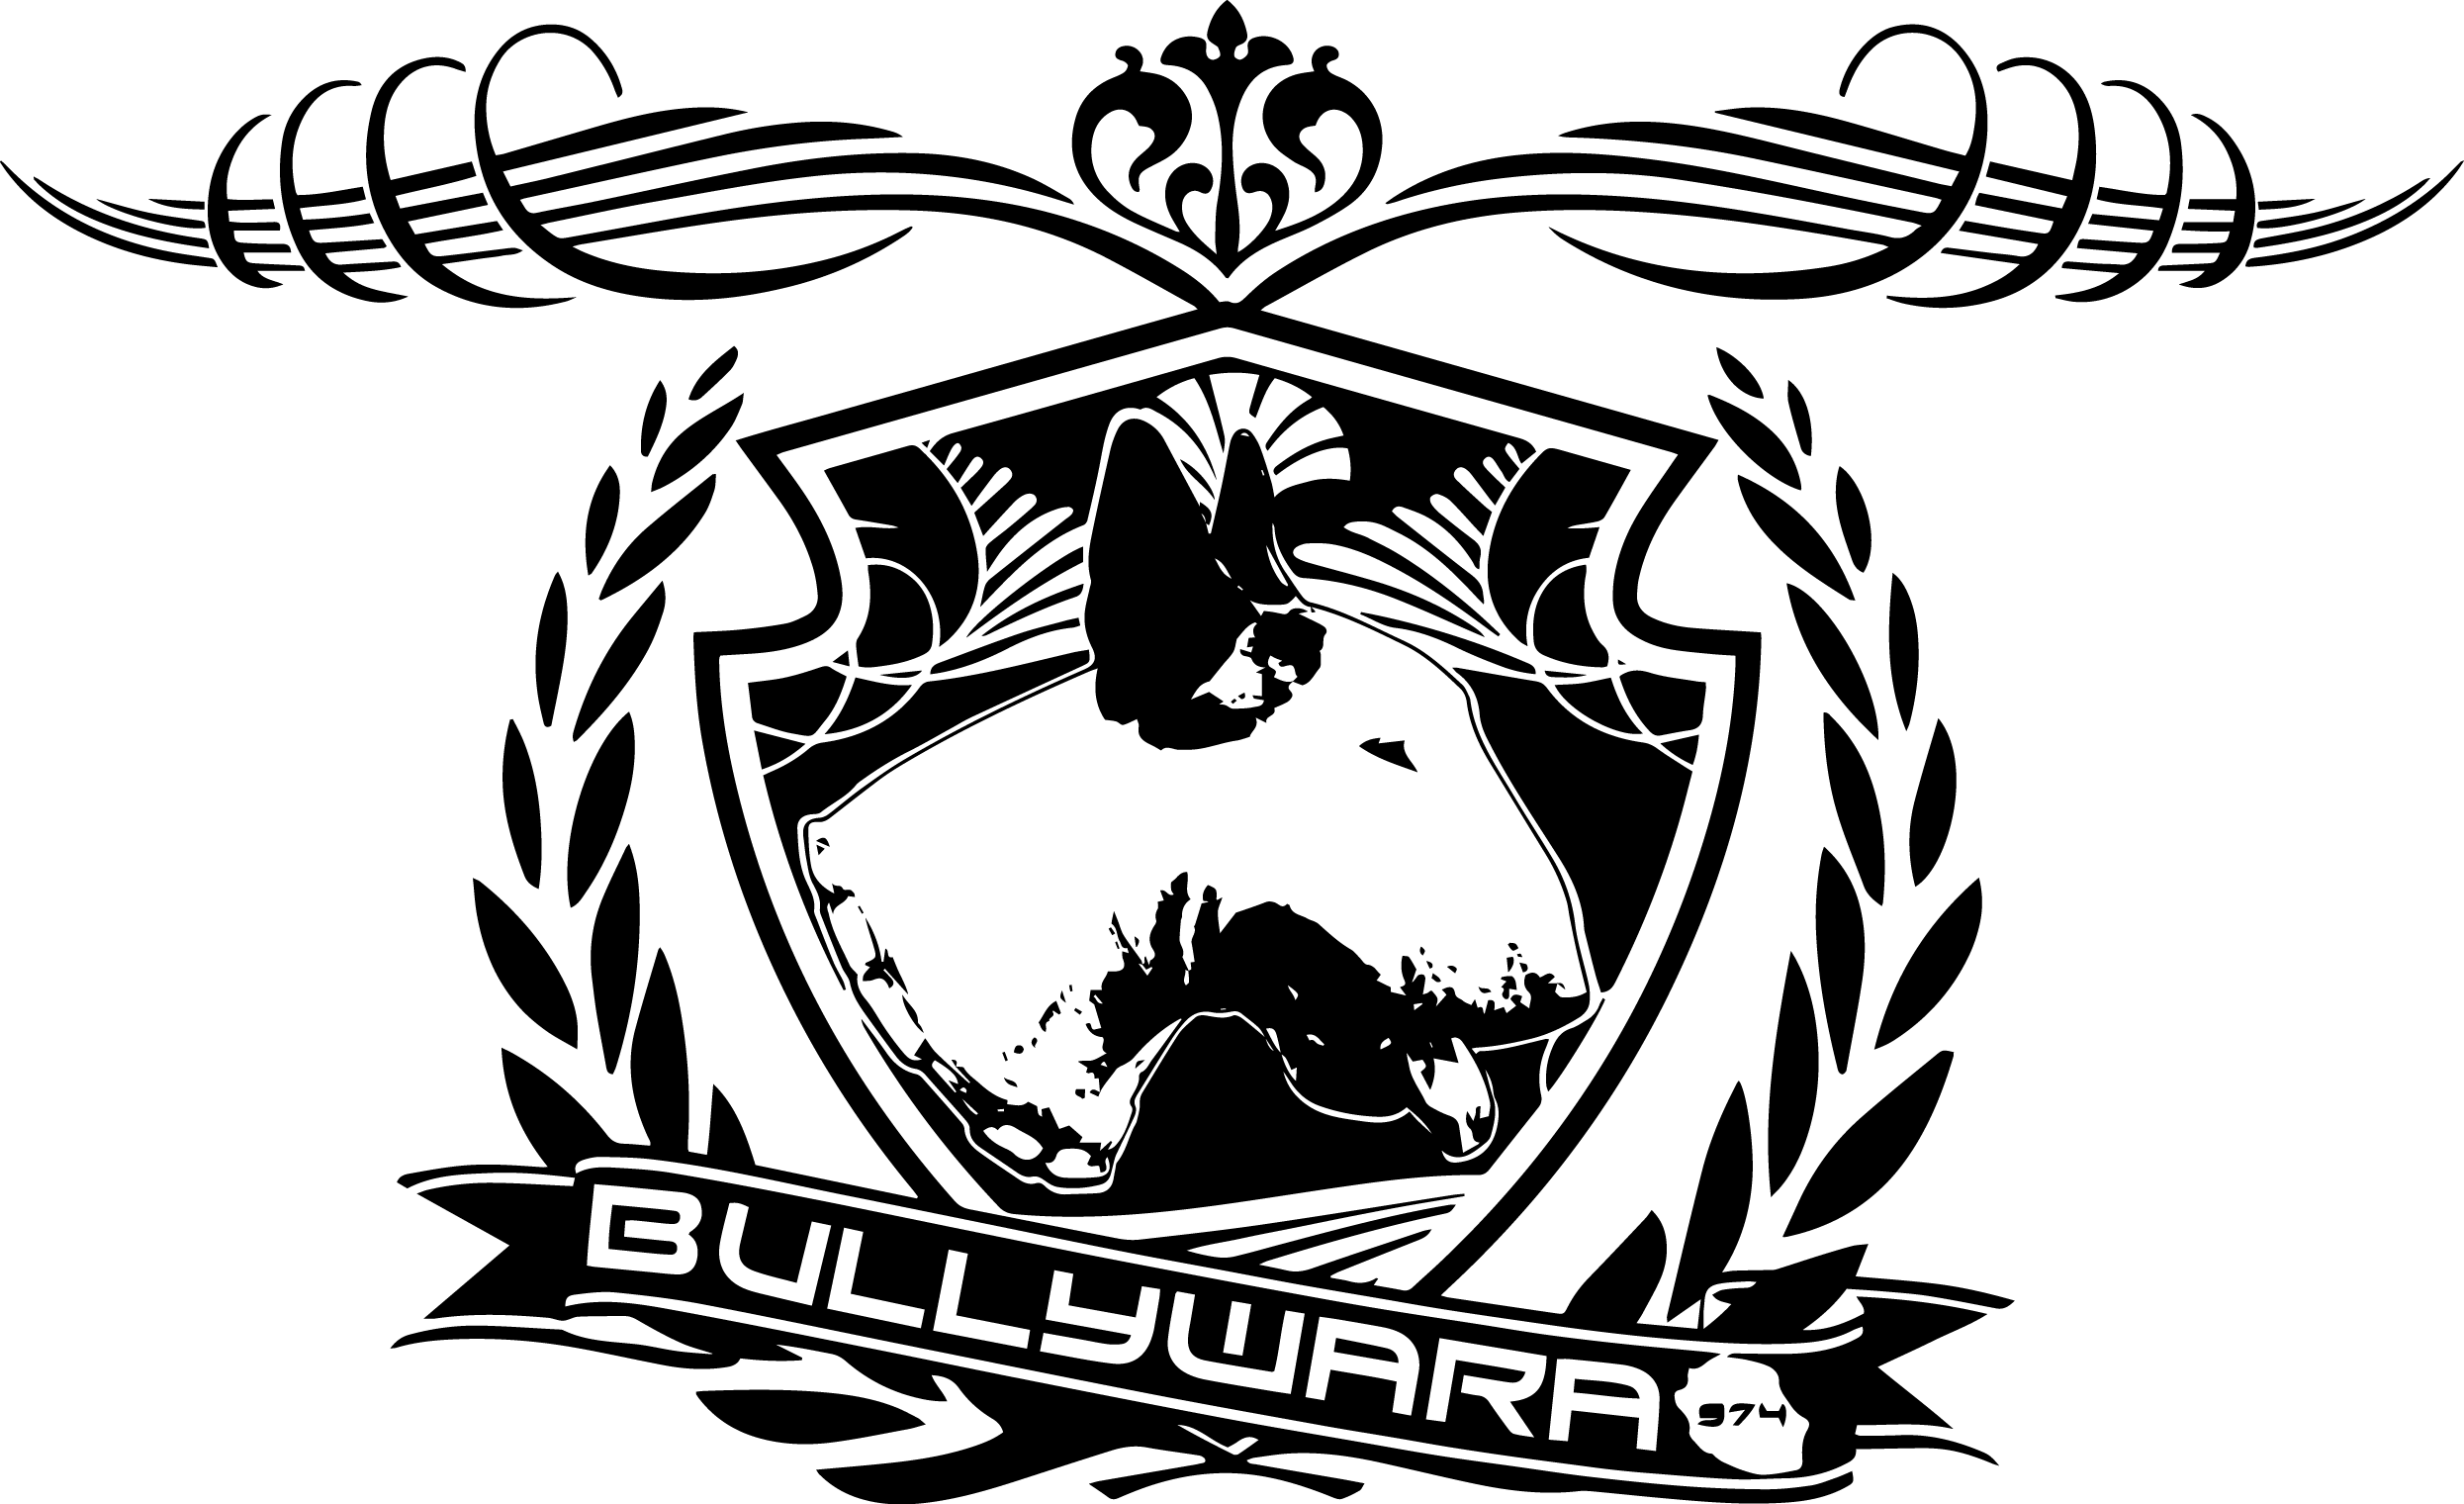 Bullywara